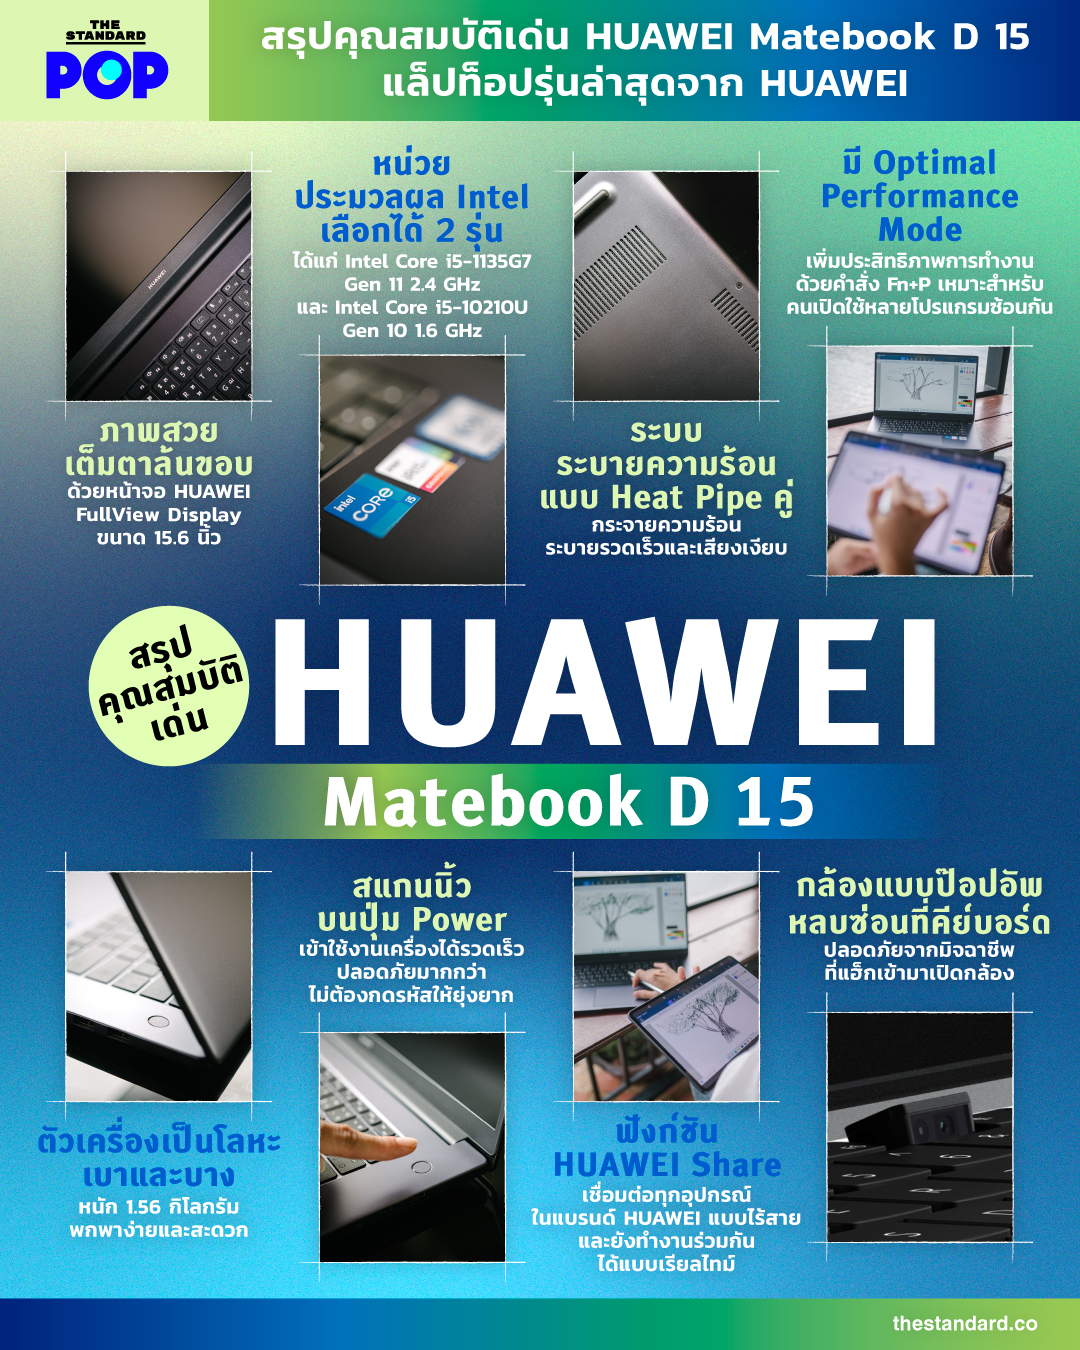 HUAWEI Matebook D 15